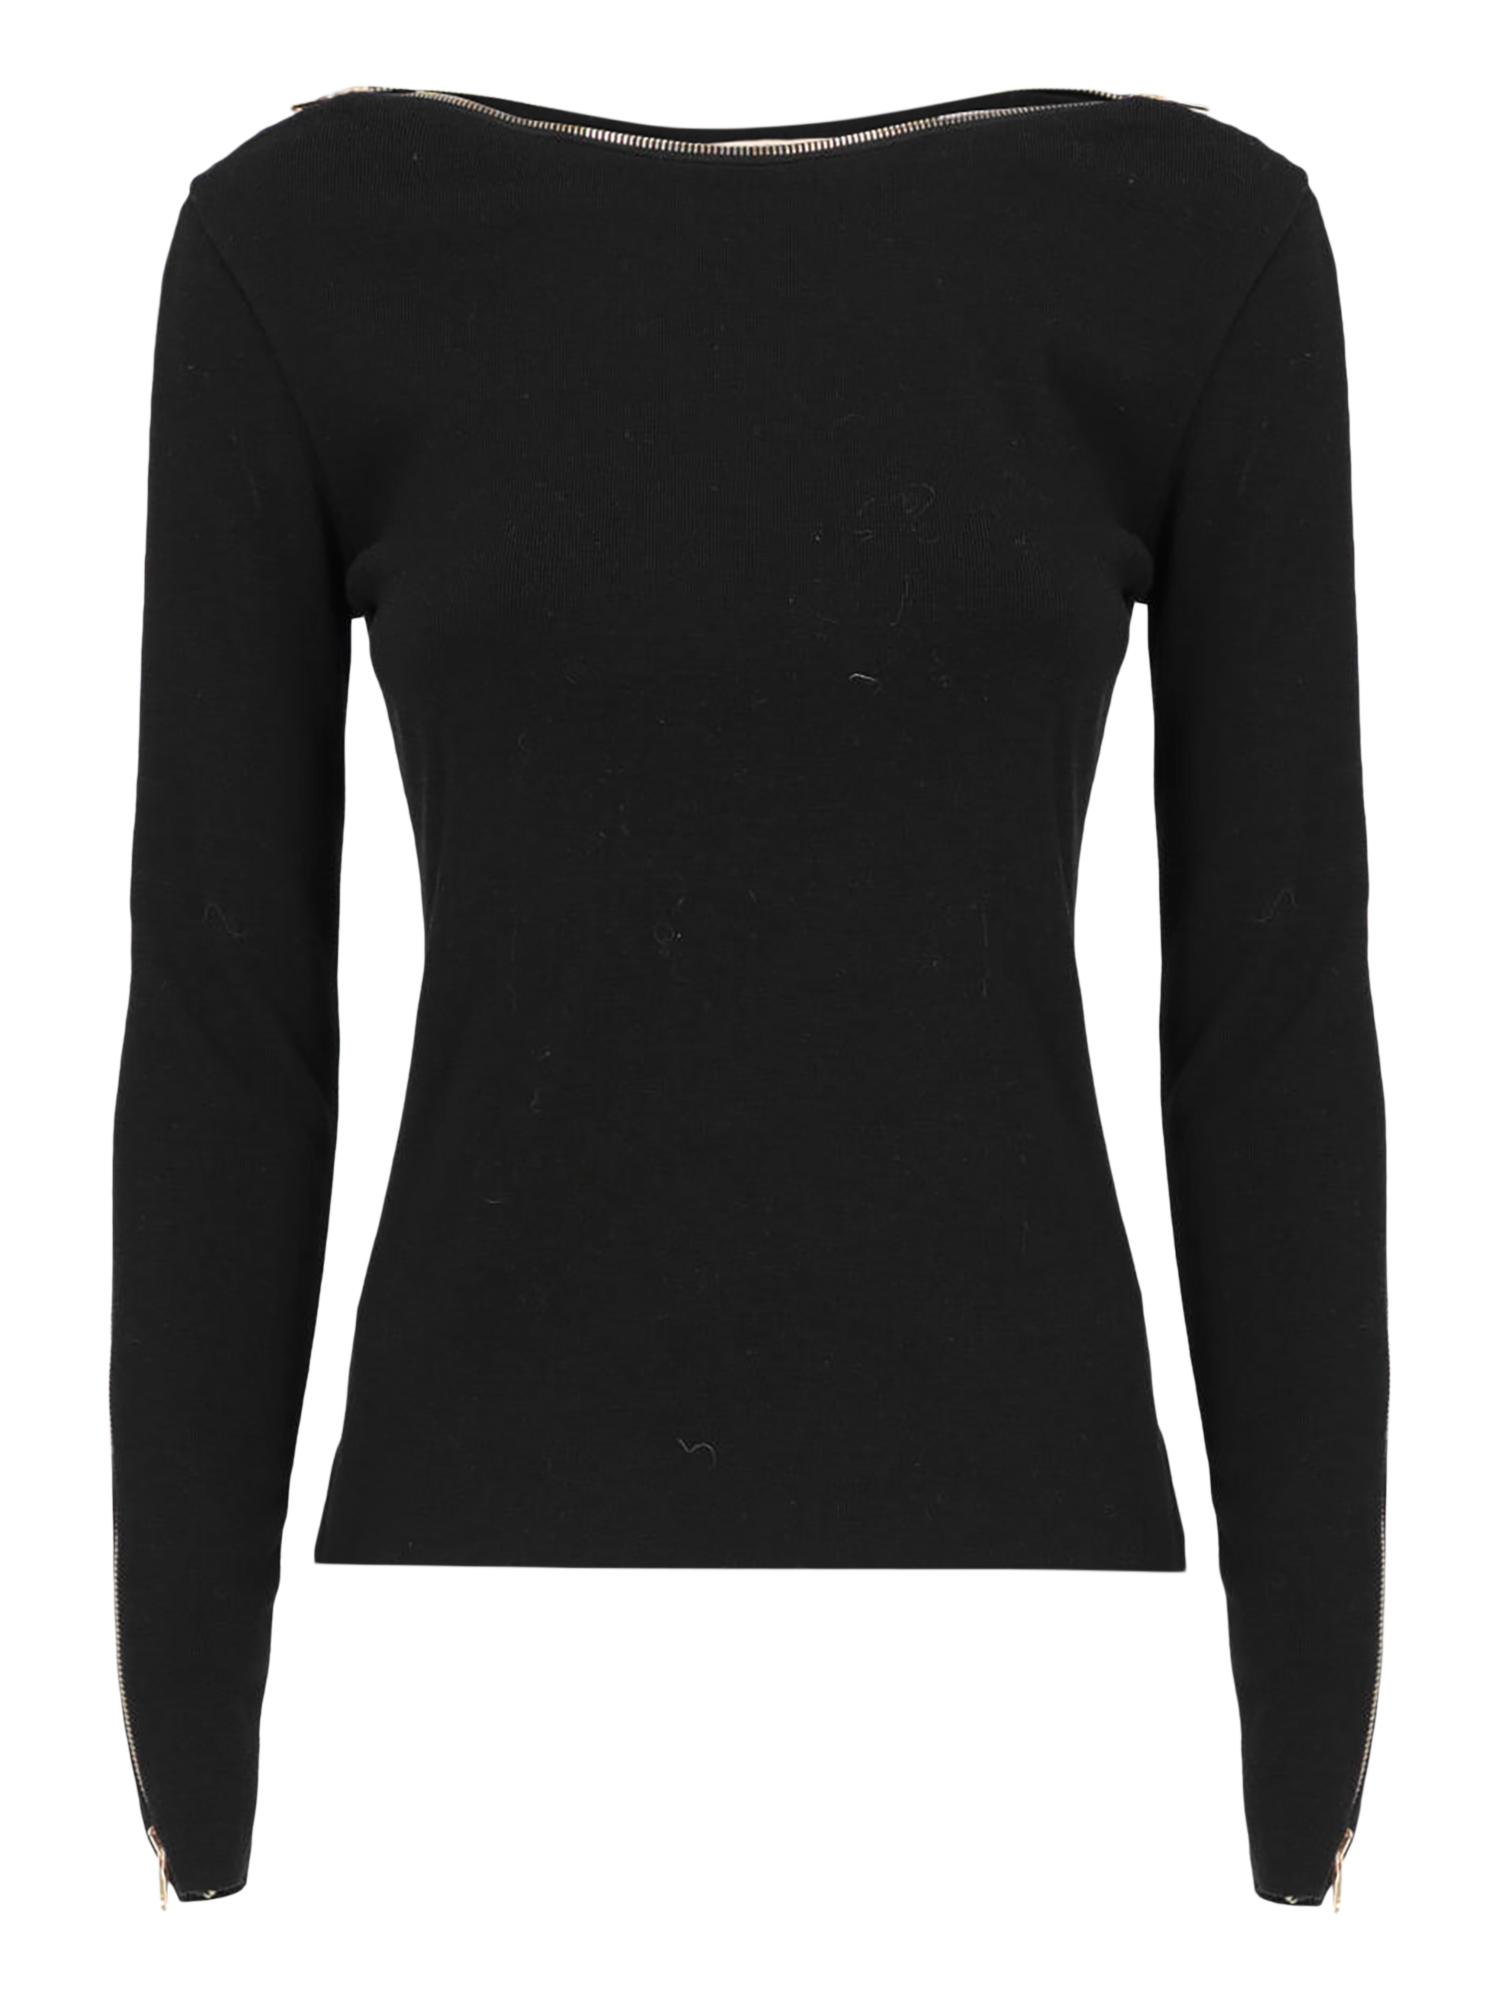 T-shirts Et Tops Pour Femme - Emilio Pucci - En Wool Black - Taille:  -